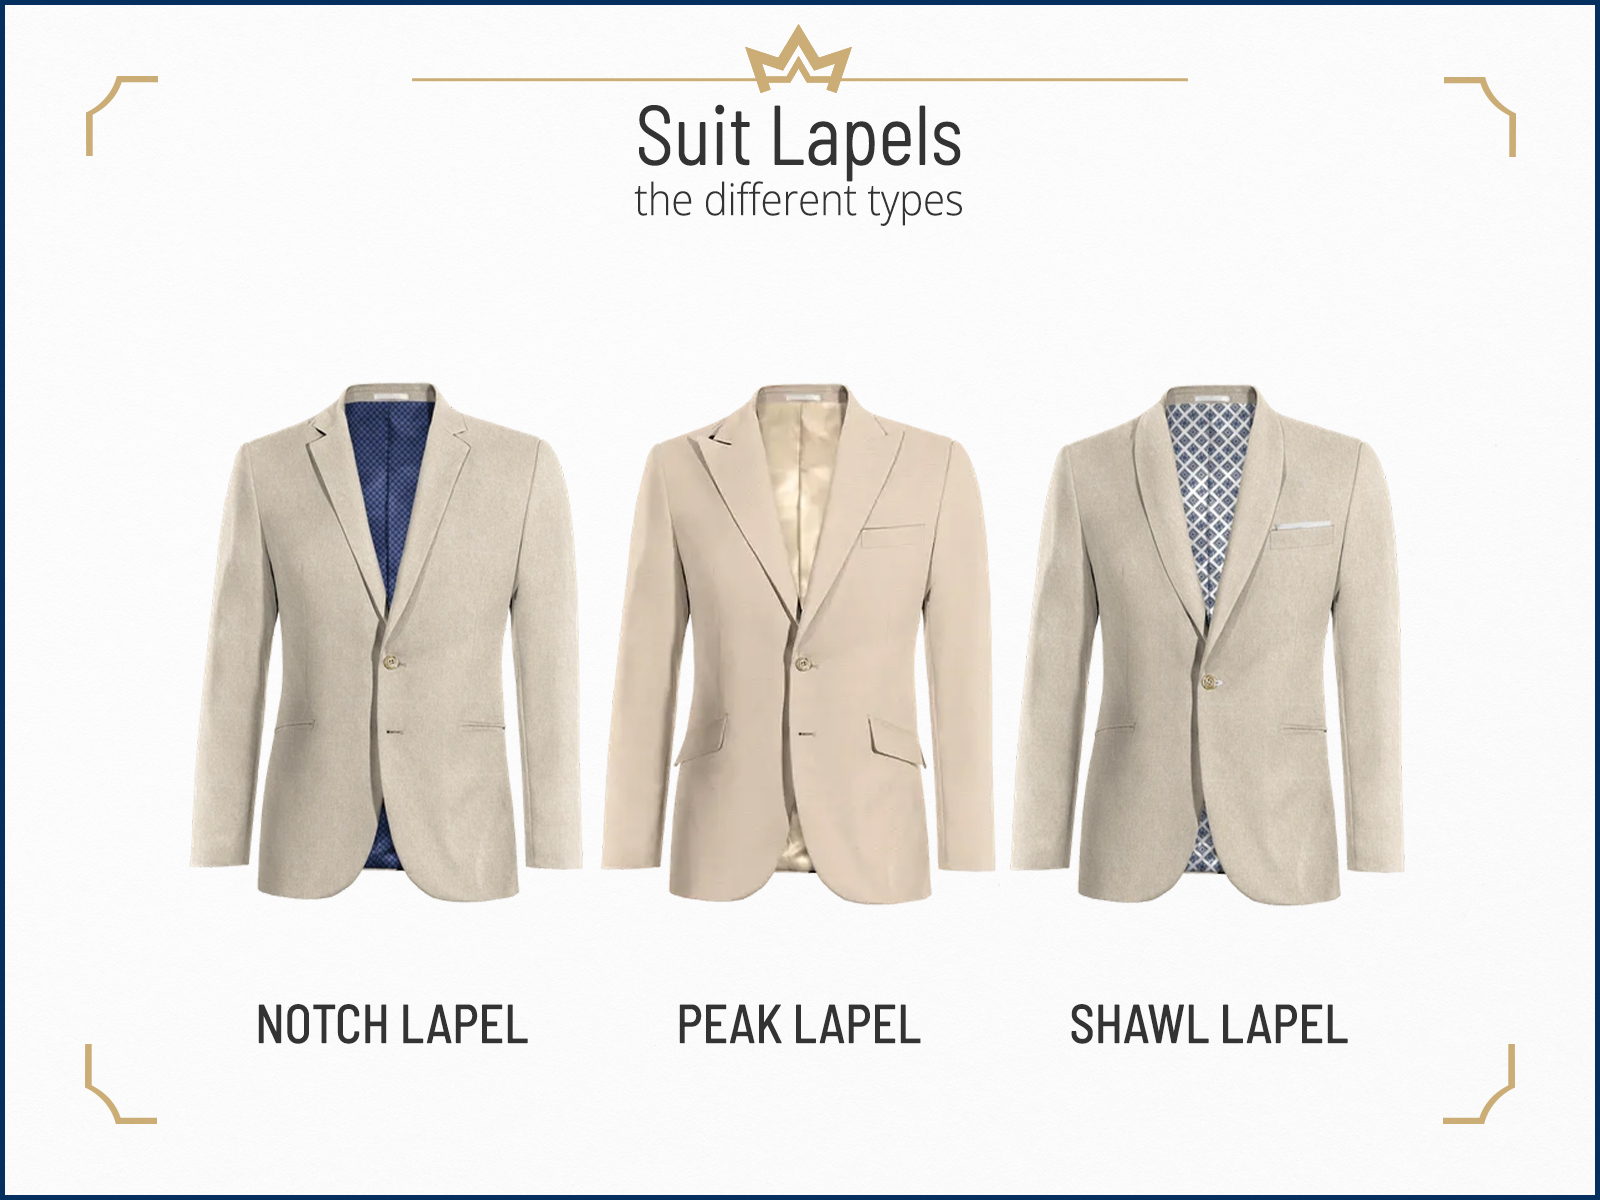 Different suit jacket lapel types: notch lapel vs. peak lapel vs. shawl lapel